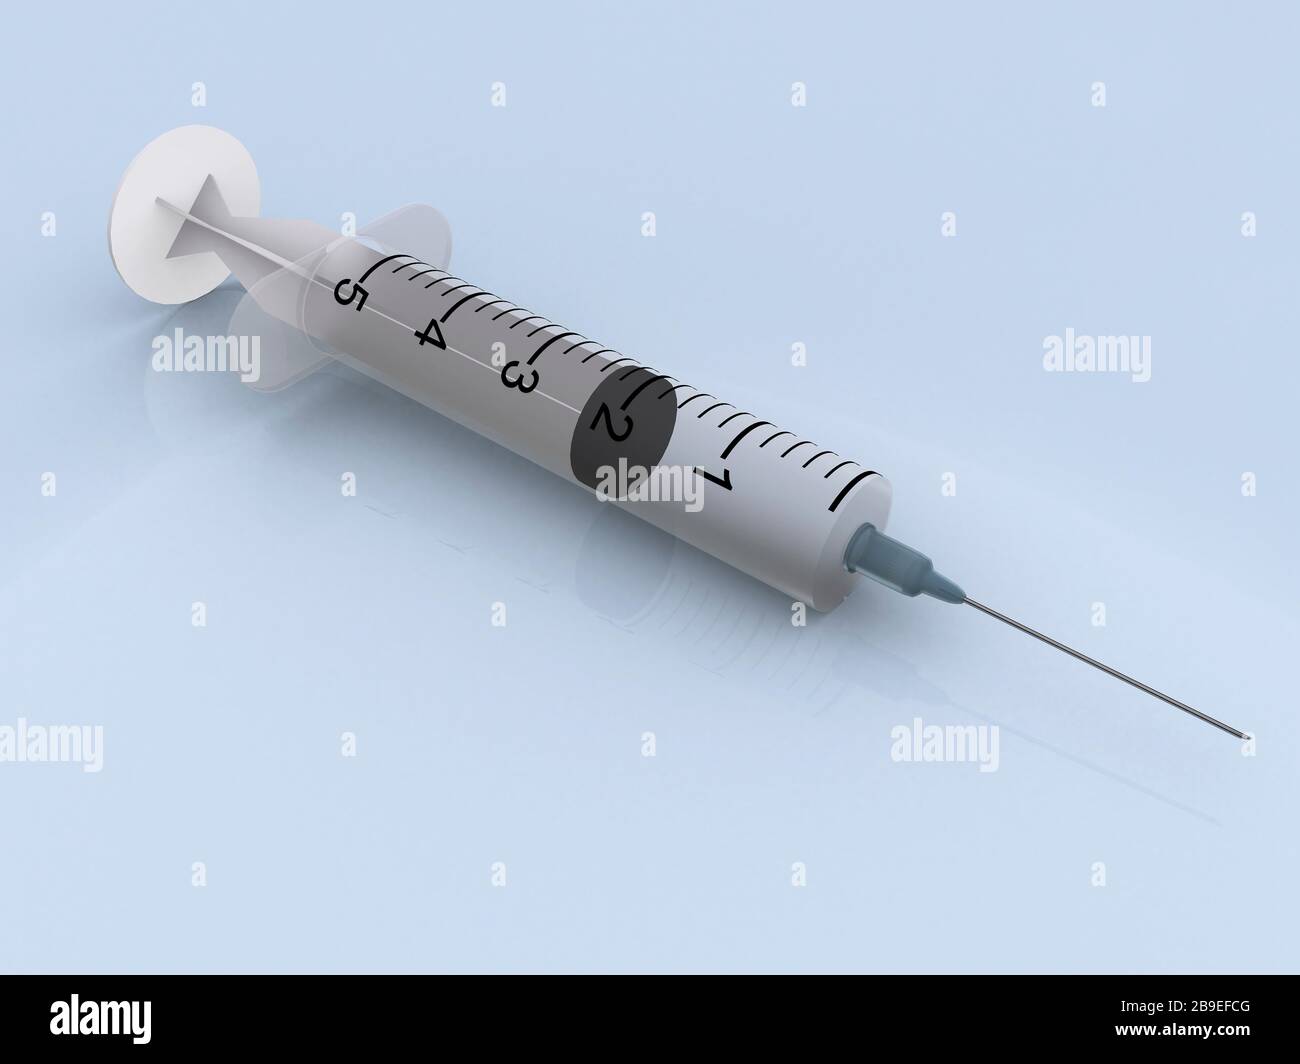 Medical illustration of a syringe. Stock Photo